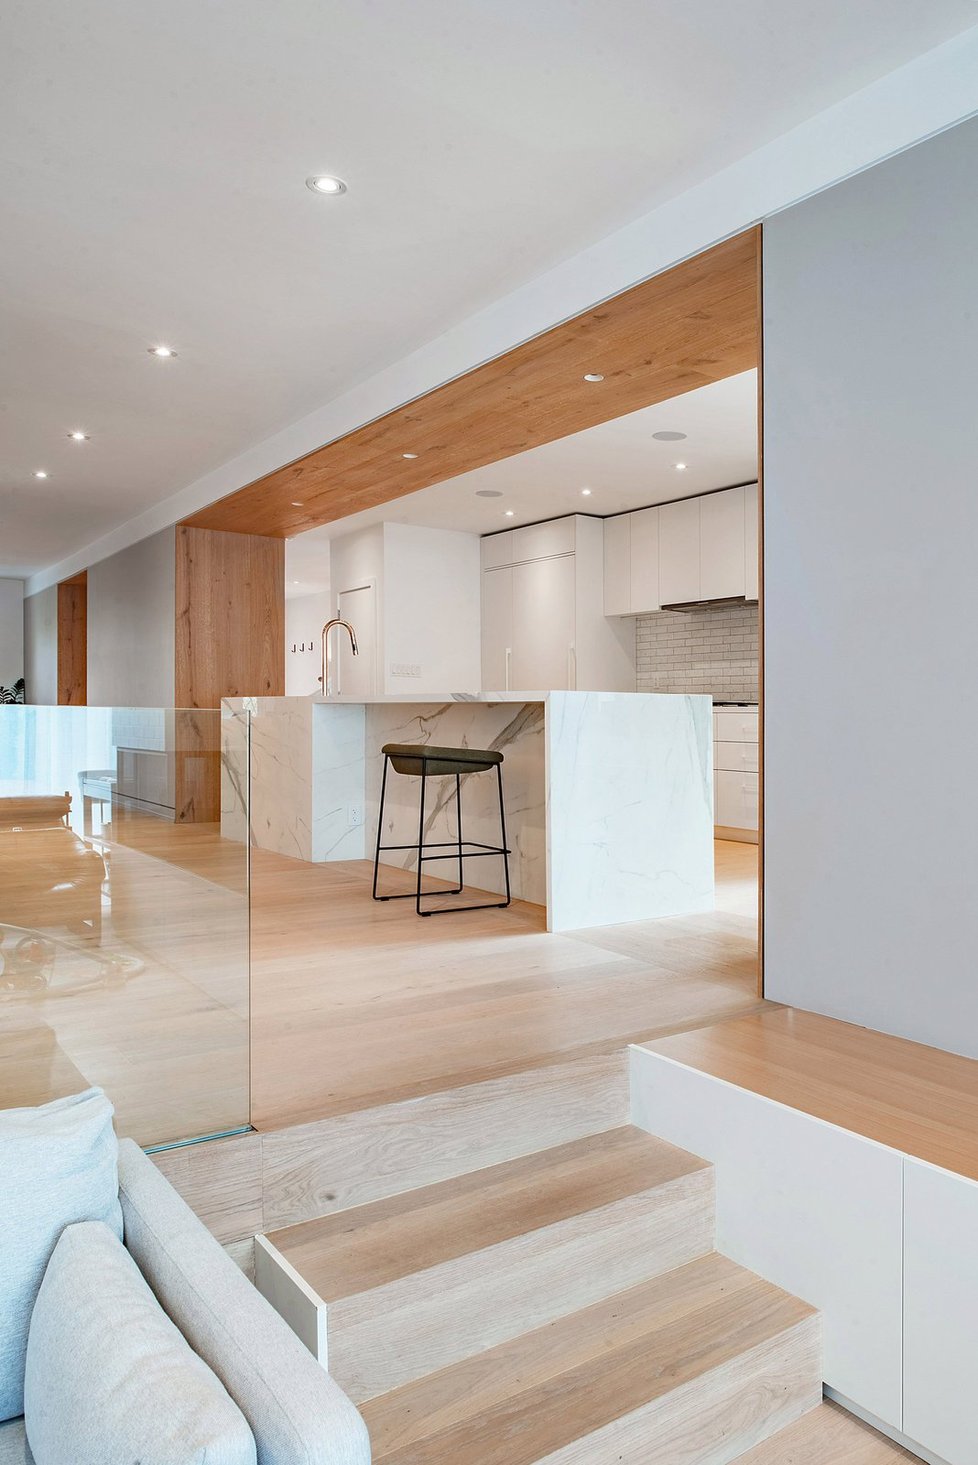 Starý dům se proměnil ve svěží minimalistický domov evokující apartmán v New Yorku